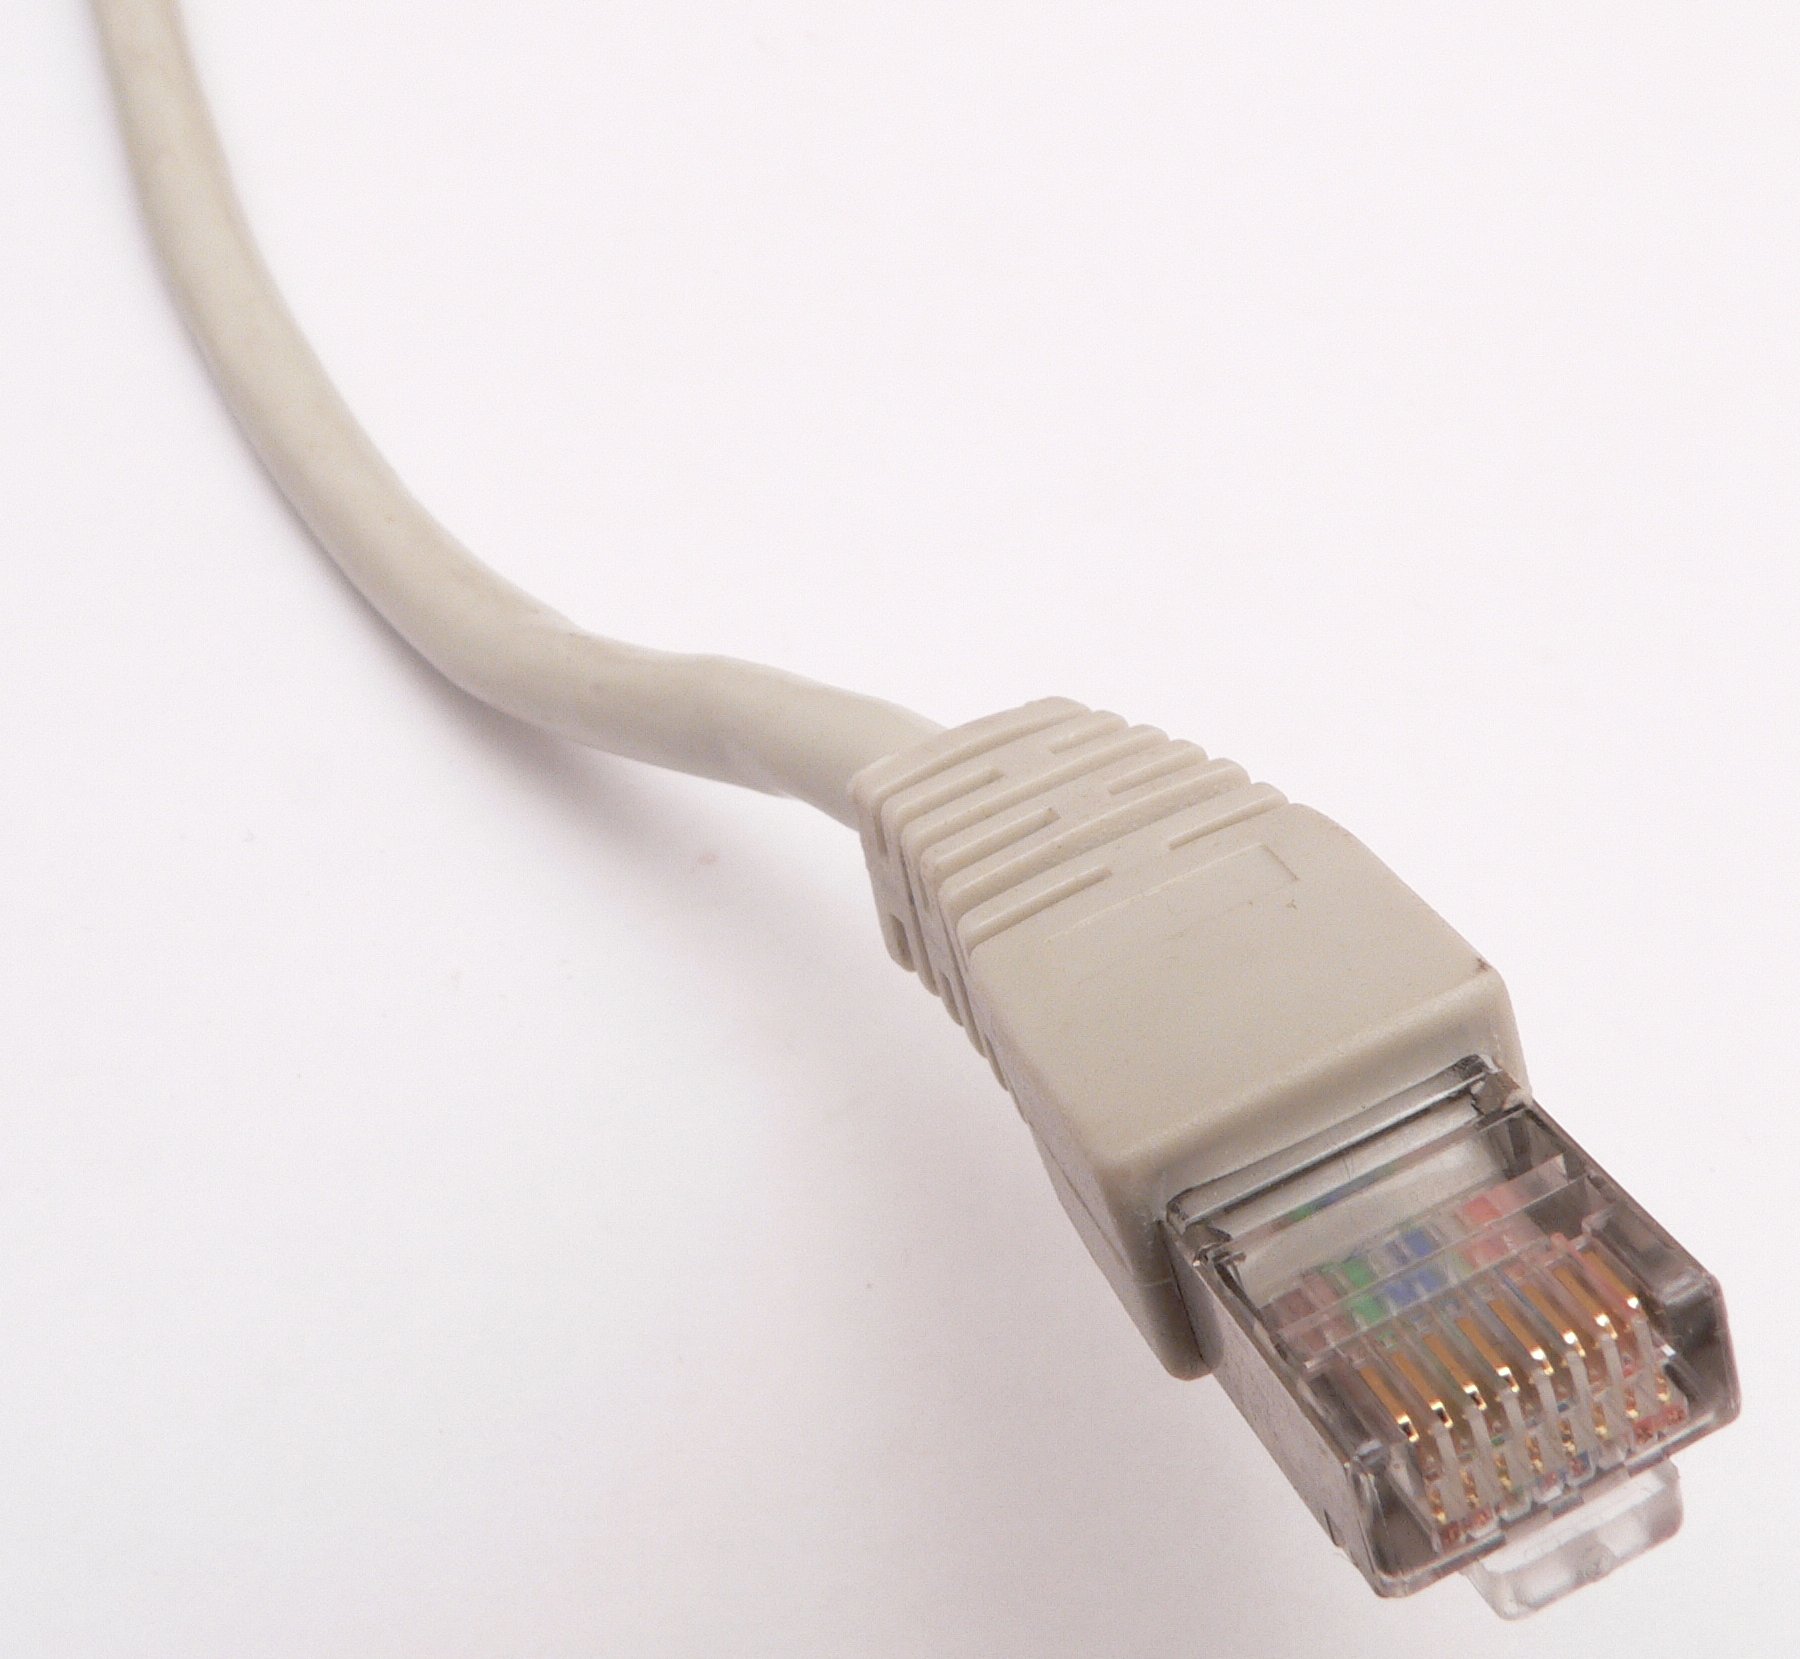 Ethernet_RJ45_connector_p1160054